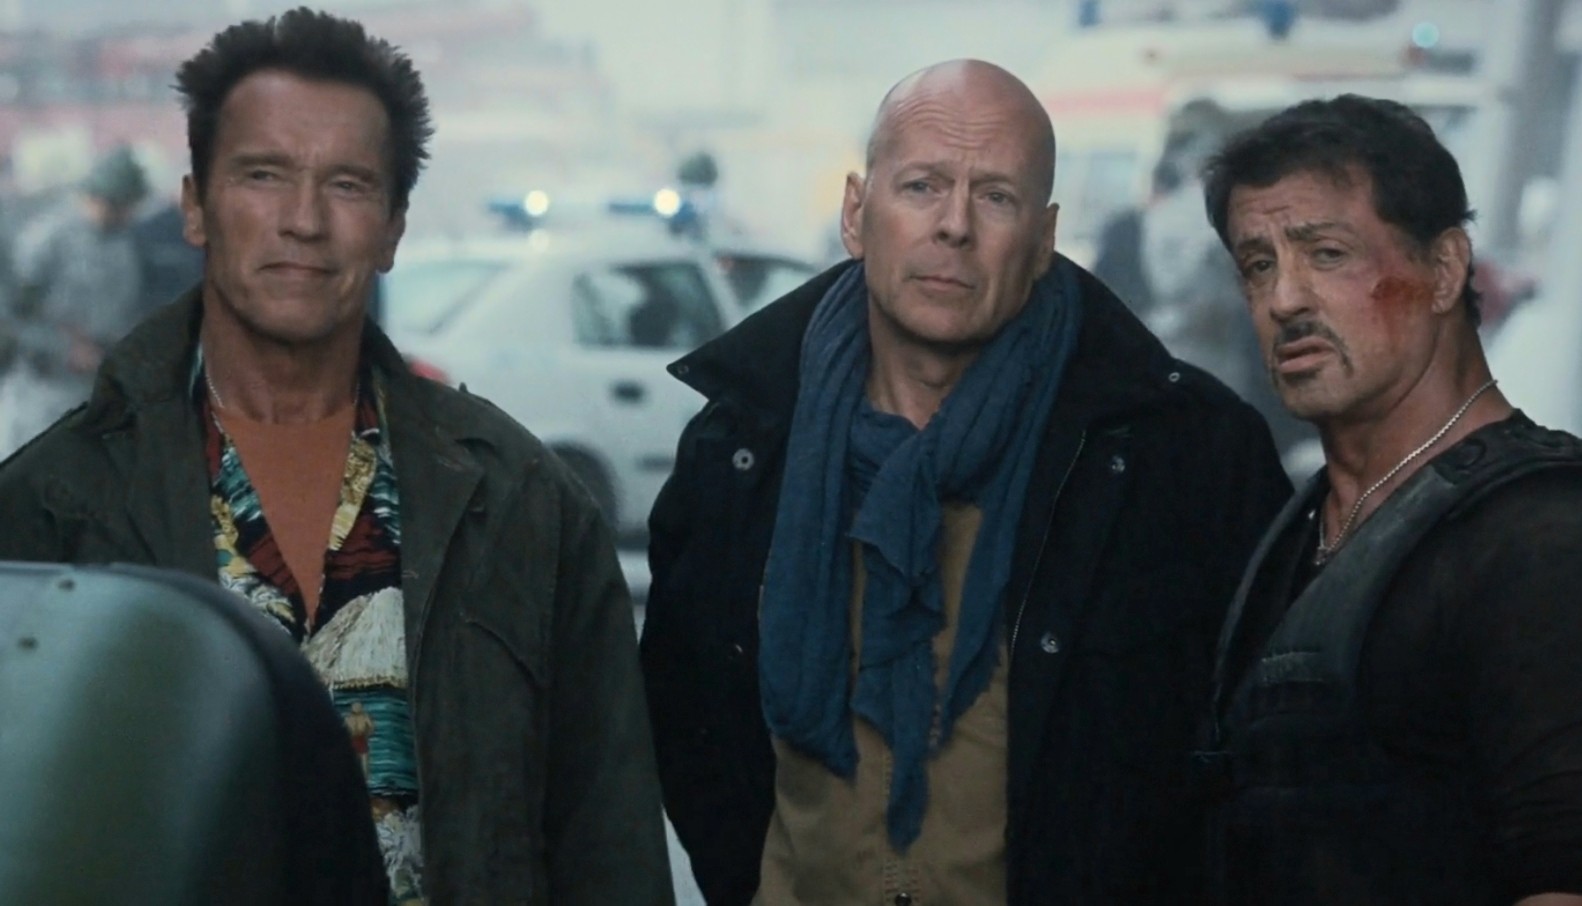 Bruce Willis, Arnold Schwarzenegger and Sylvester Stallone